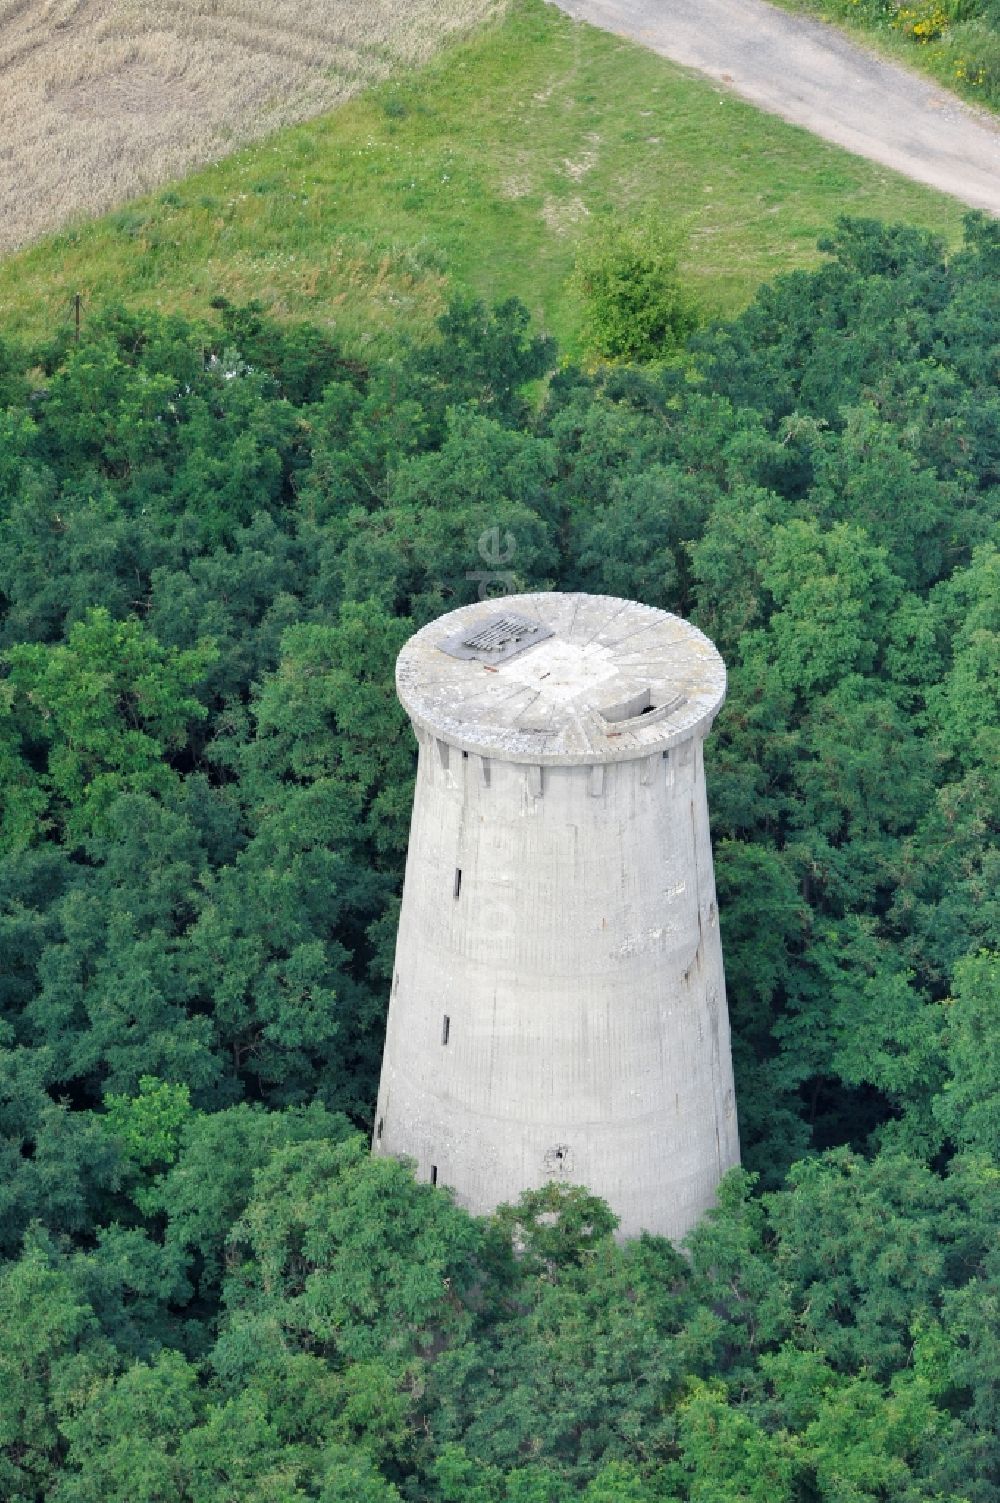 Weesow von oben - Umbau des Beton- Turmes der formals militärisch genutzen Liegenschaft Radarturm Weesow in Weesow im Bundesland Brandenburg, Deutschland